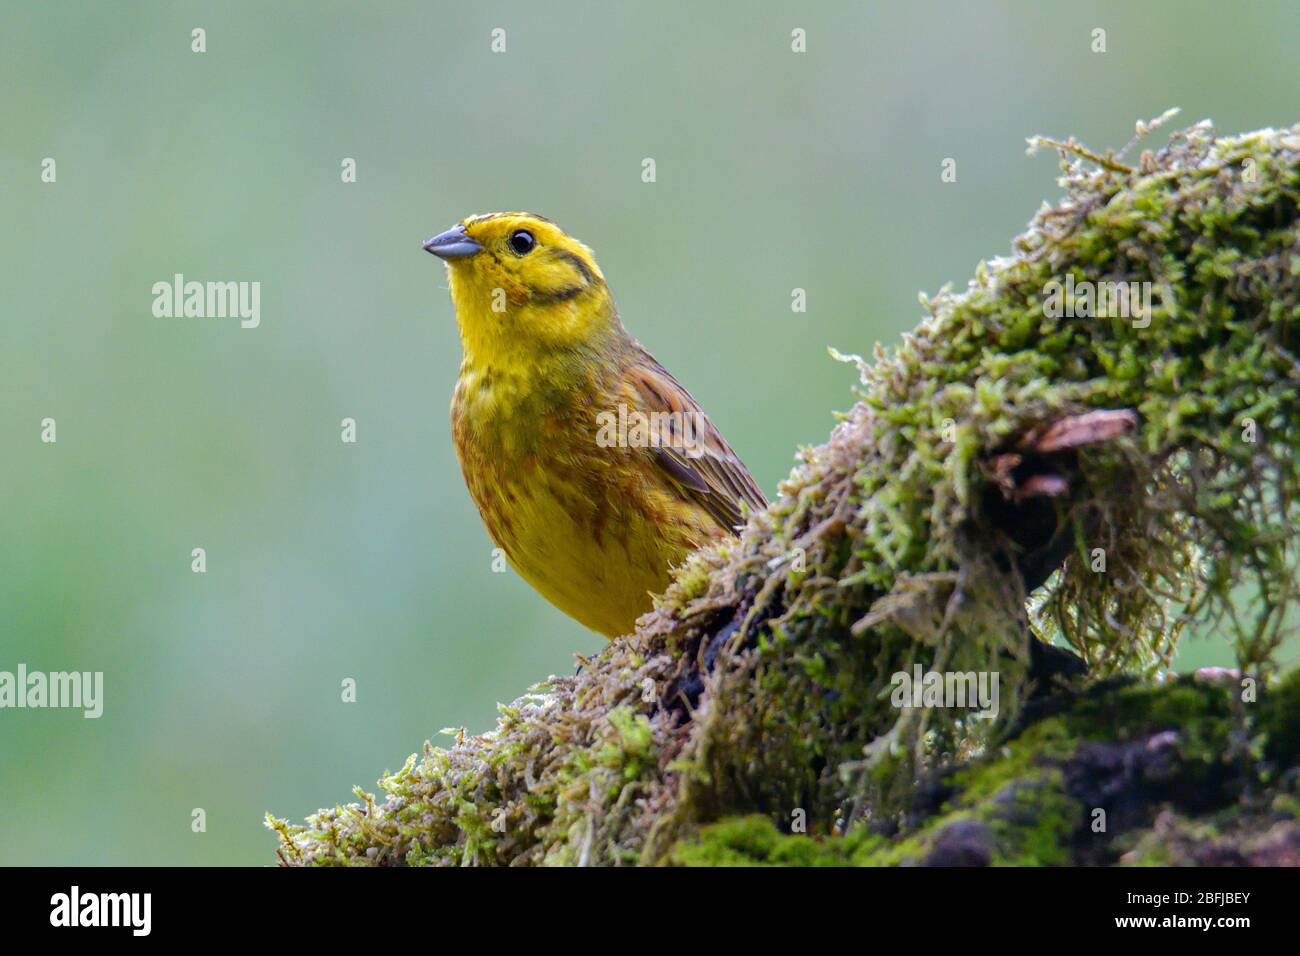 Yellowhammer small yellow bird close up Stock Photo